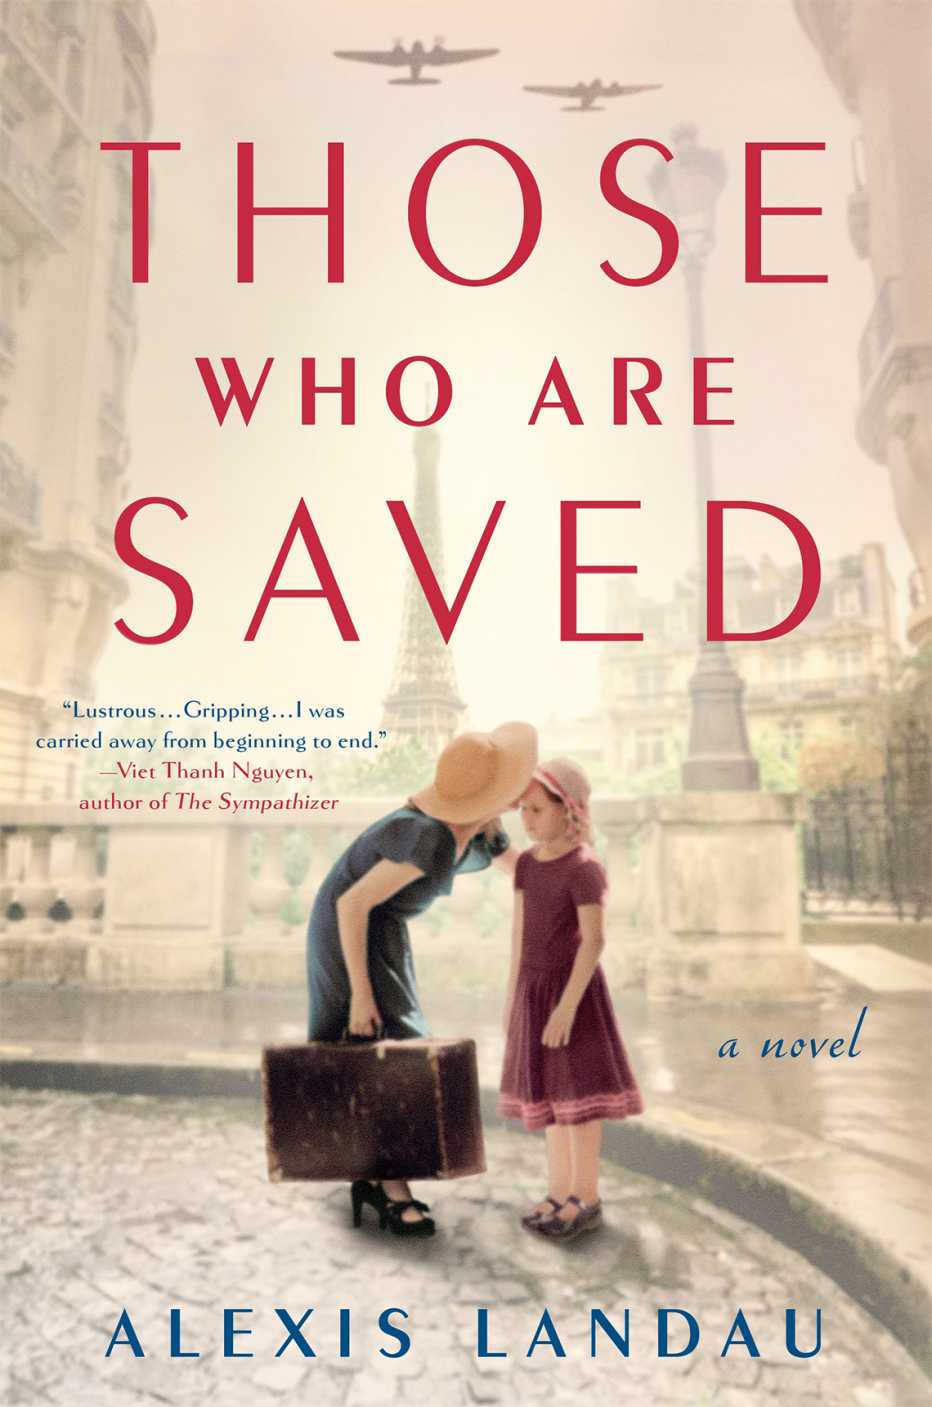 Portada del libro Those Who Are Saved de Alexis Landau.